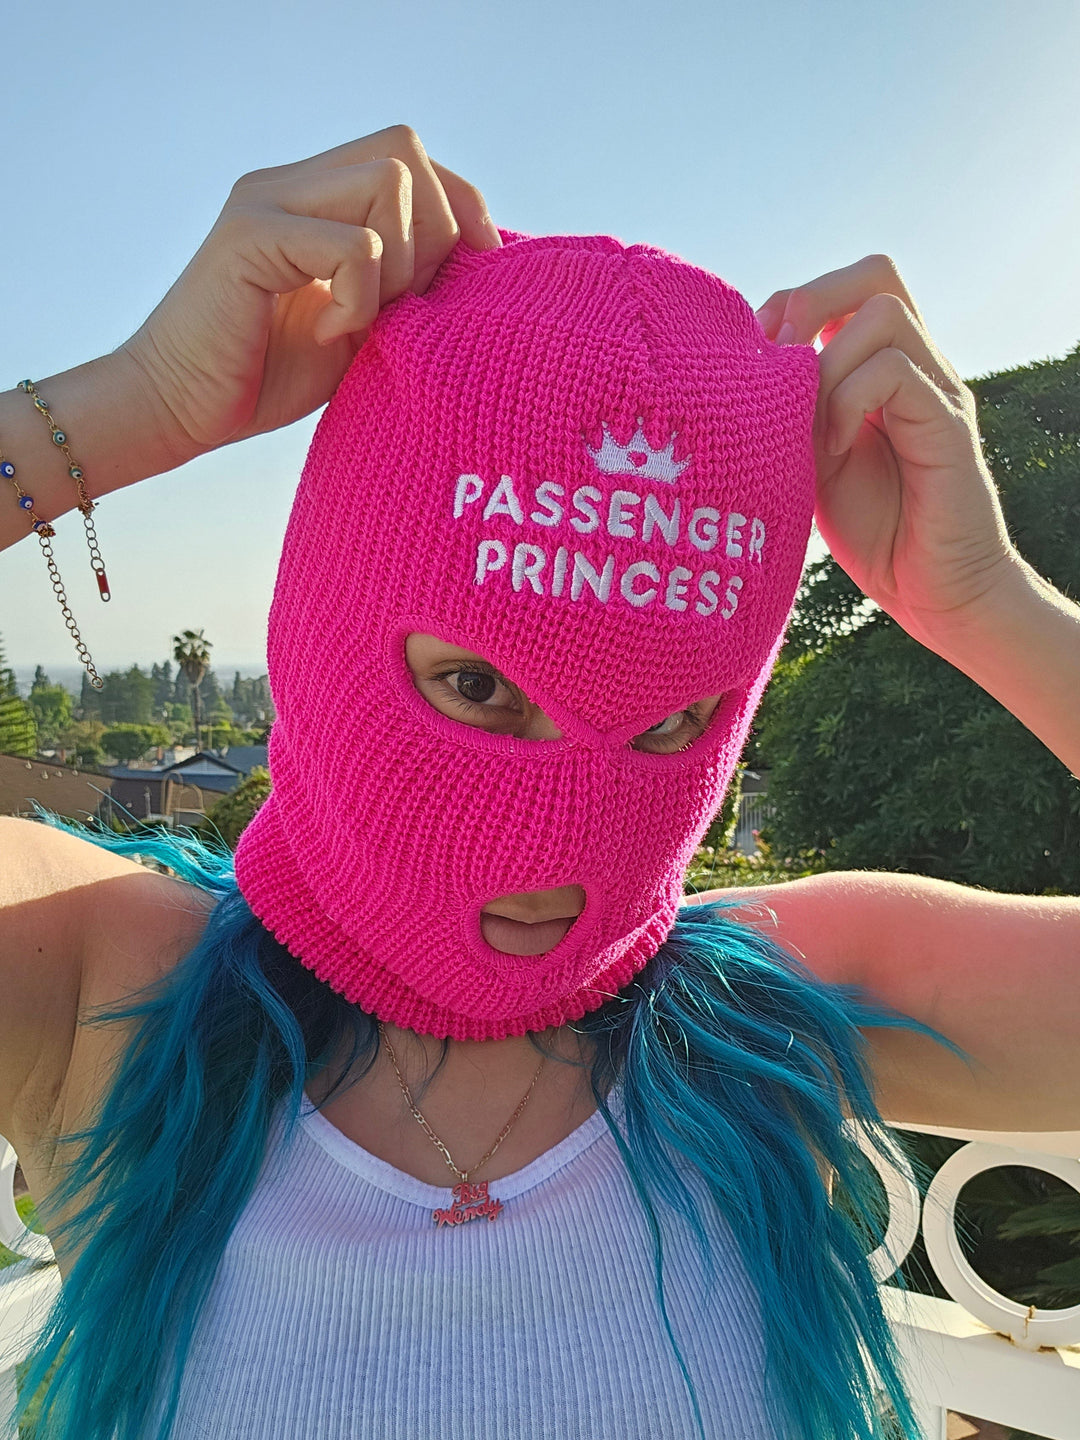 PixelThat Ski Mask 3 Hole Beanie Ski Mask - Passenger Princess